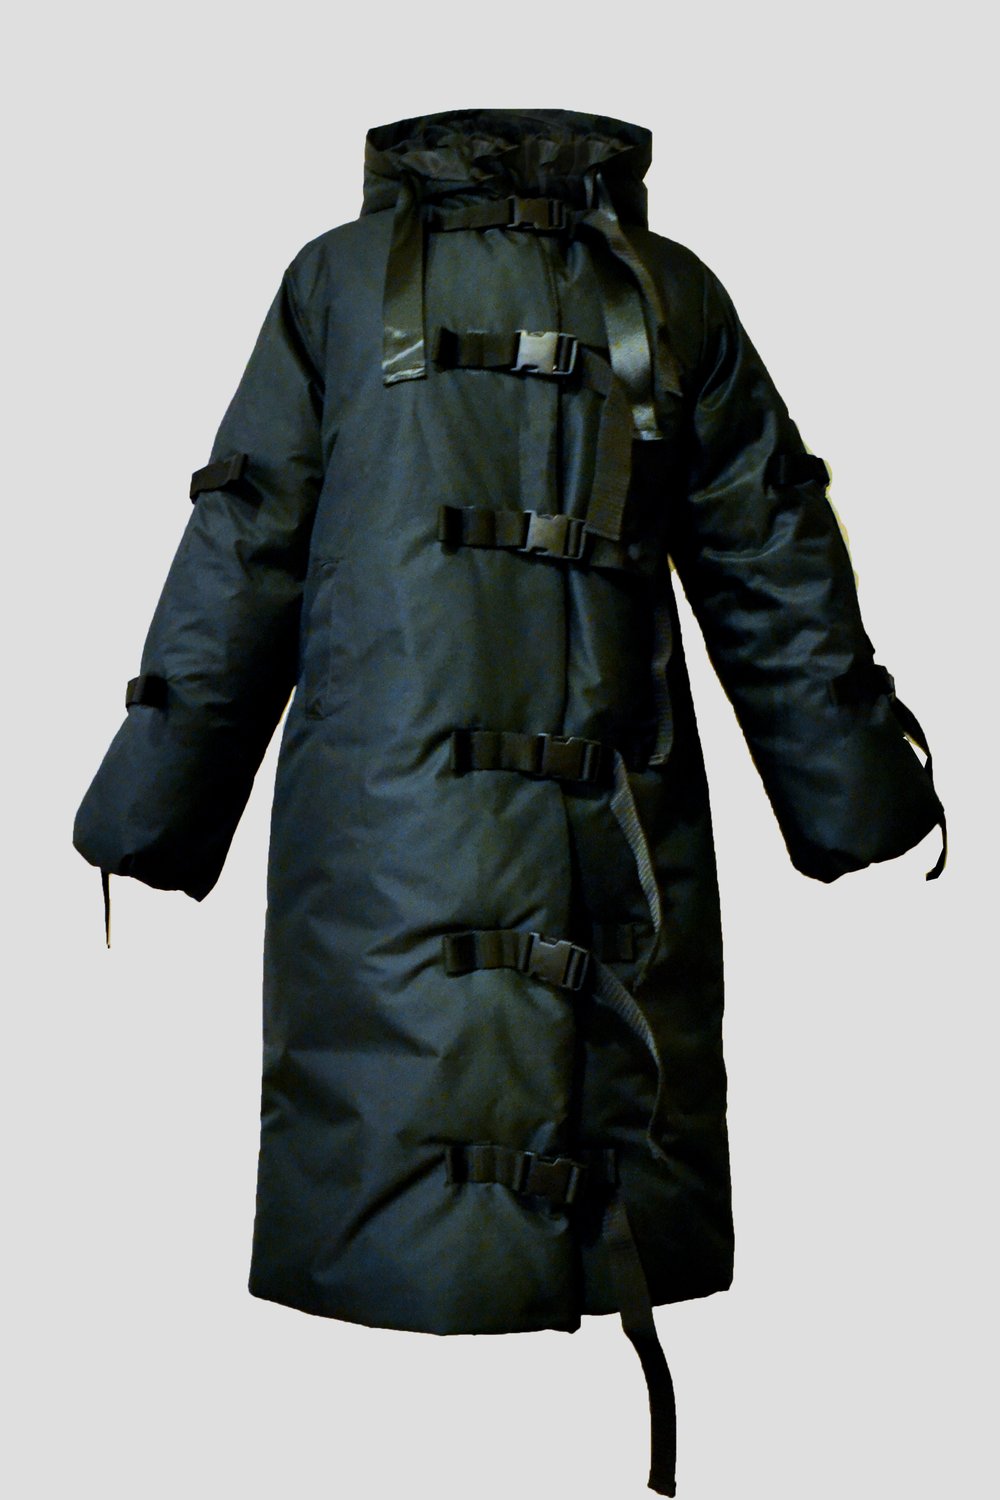 Image of Black Long Jacket